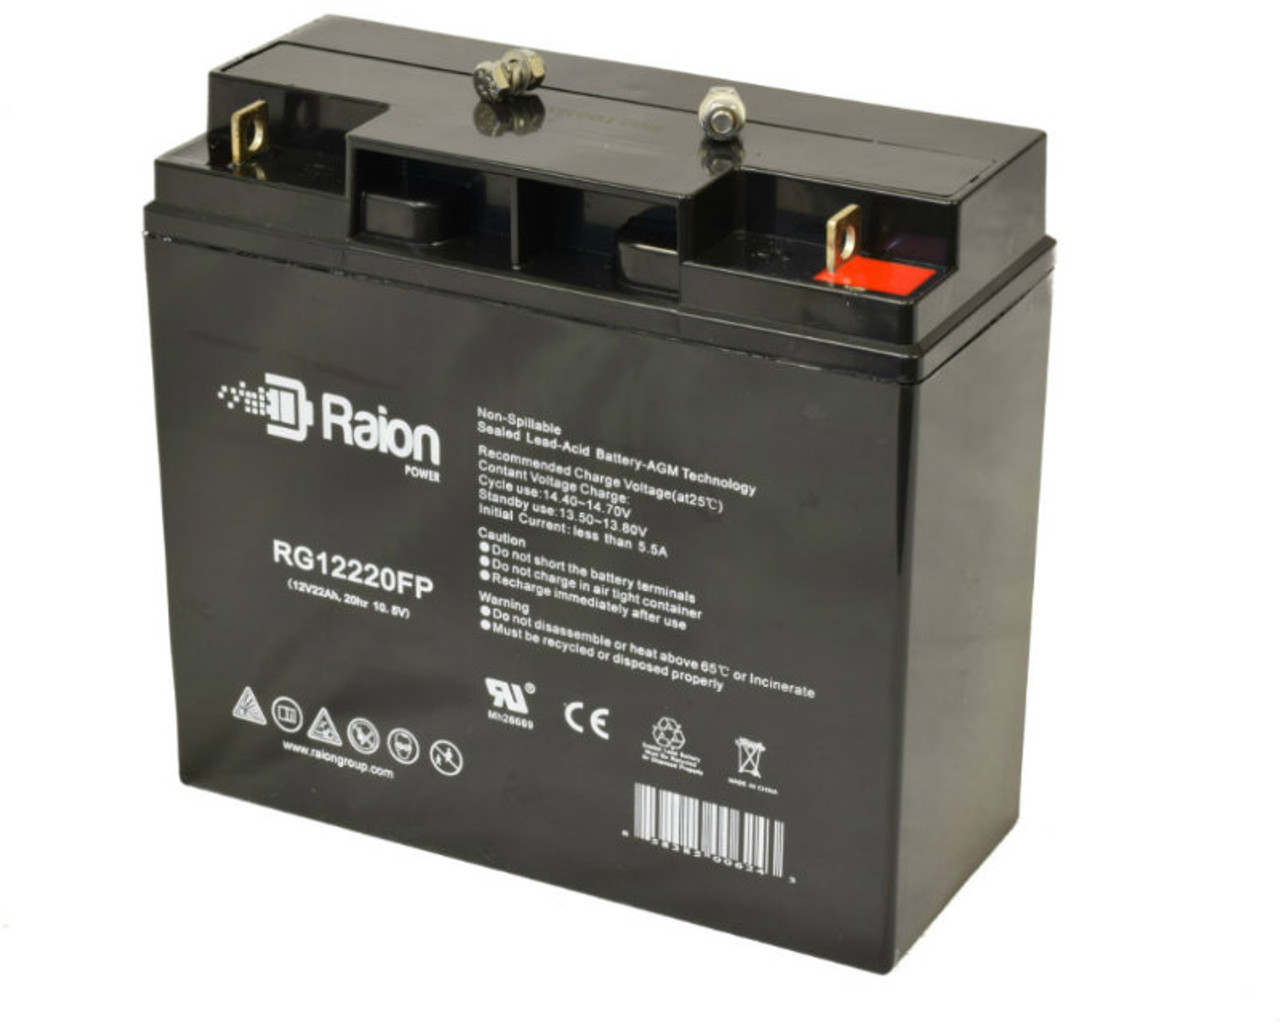 Raion Power RG12220FP 12V 22Ah Lead Acid Wheelchair Battery for Amigo Mobility MC 380000B